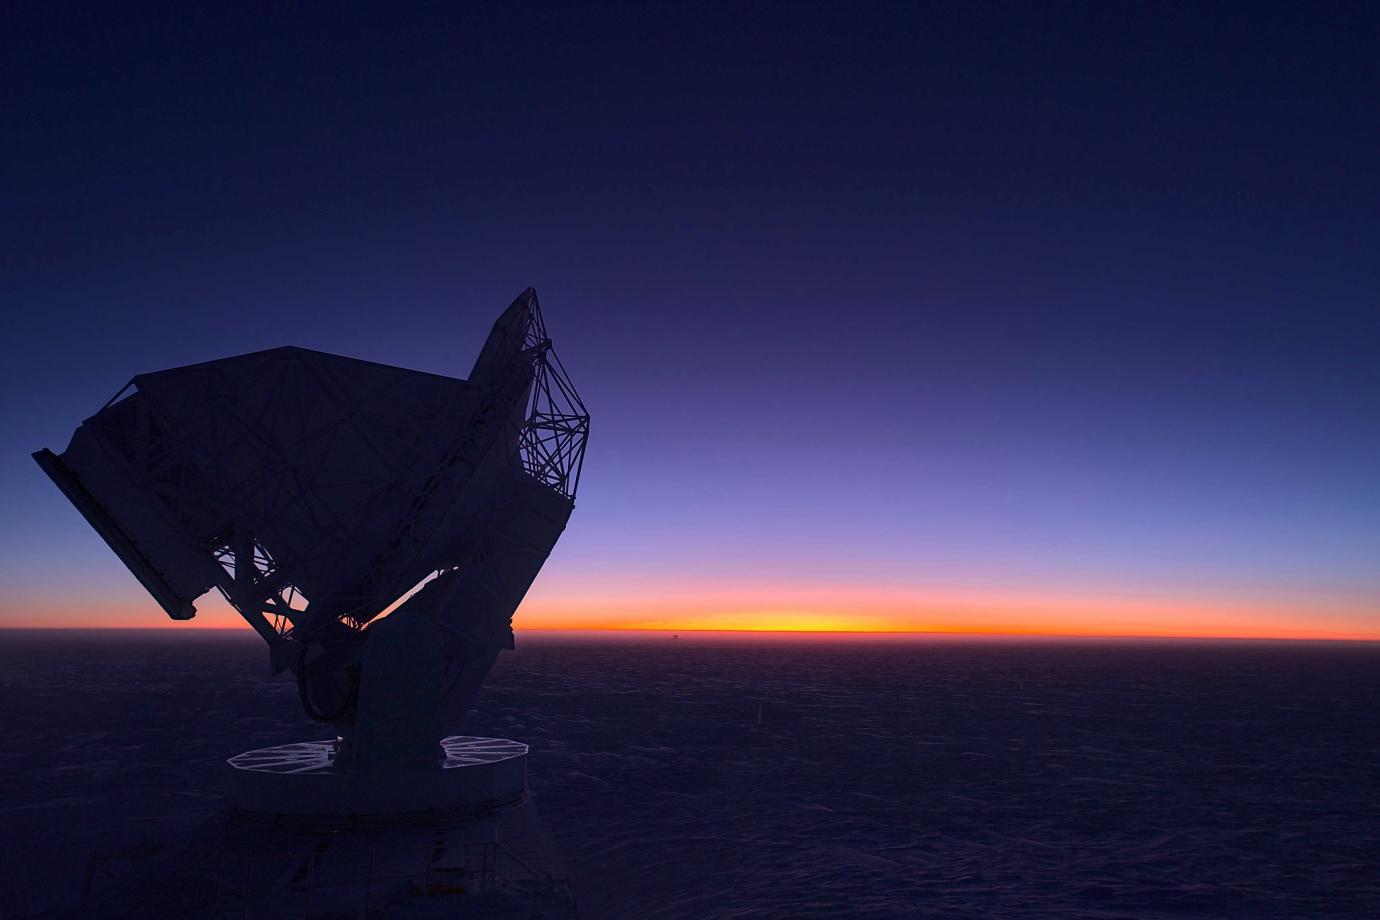 South Pole Telescope at sunrise